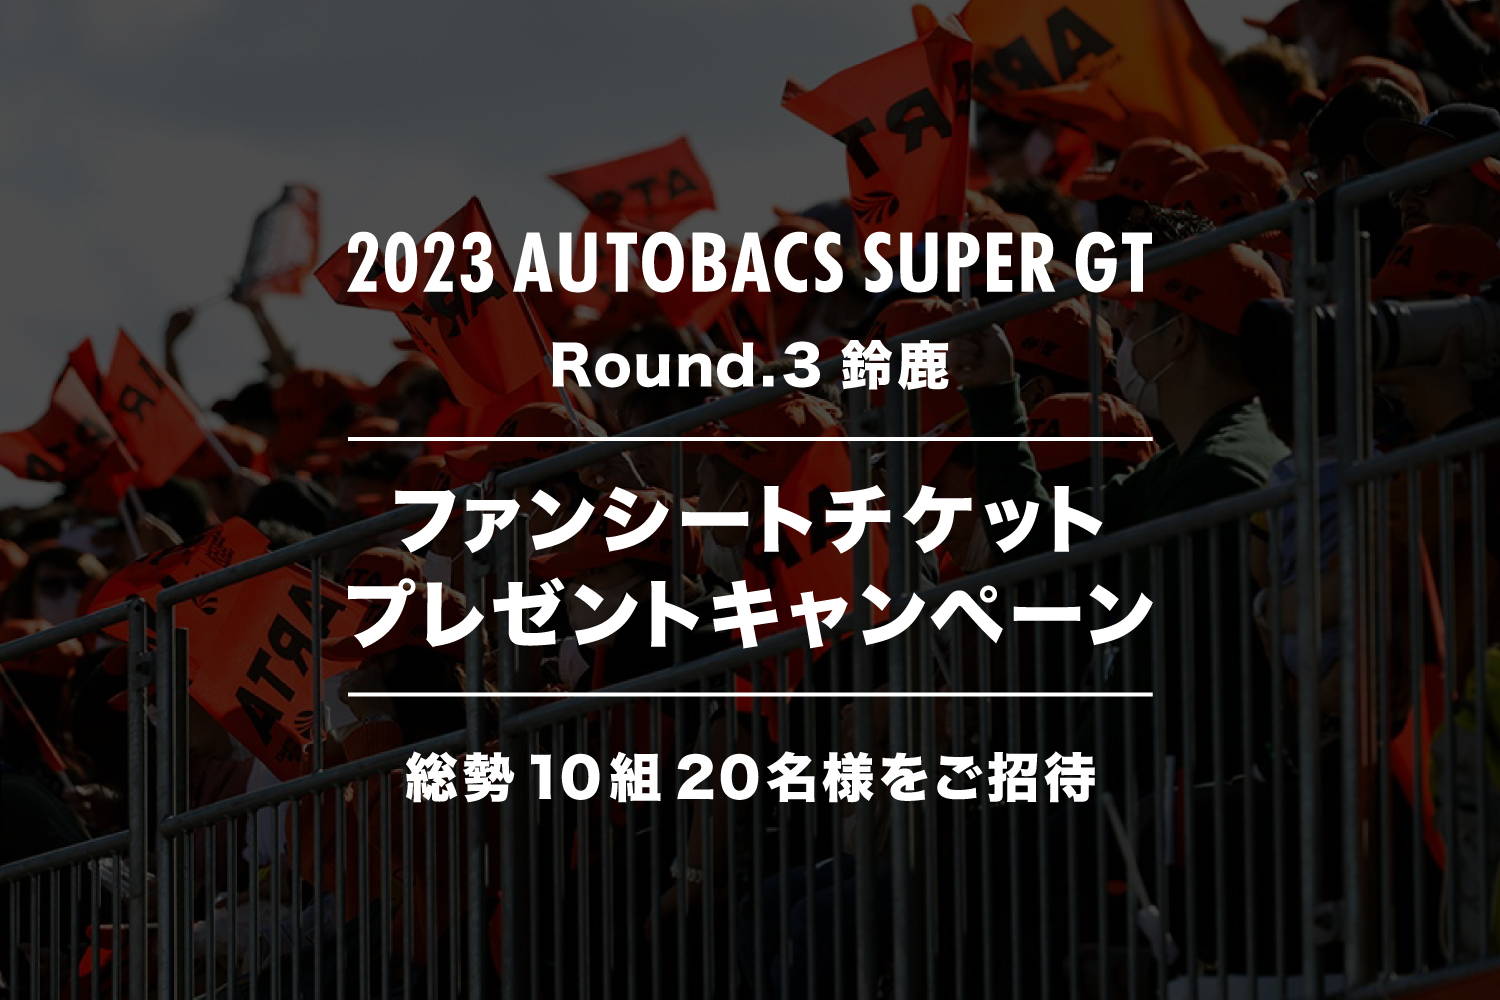 終了いたしました】2023 AUTOBACS SUPER GT Round.3 (鈴鹿サーキット